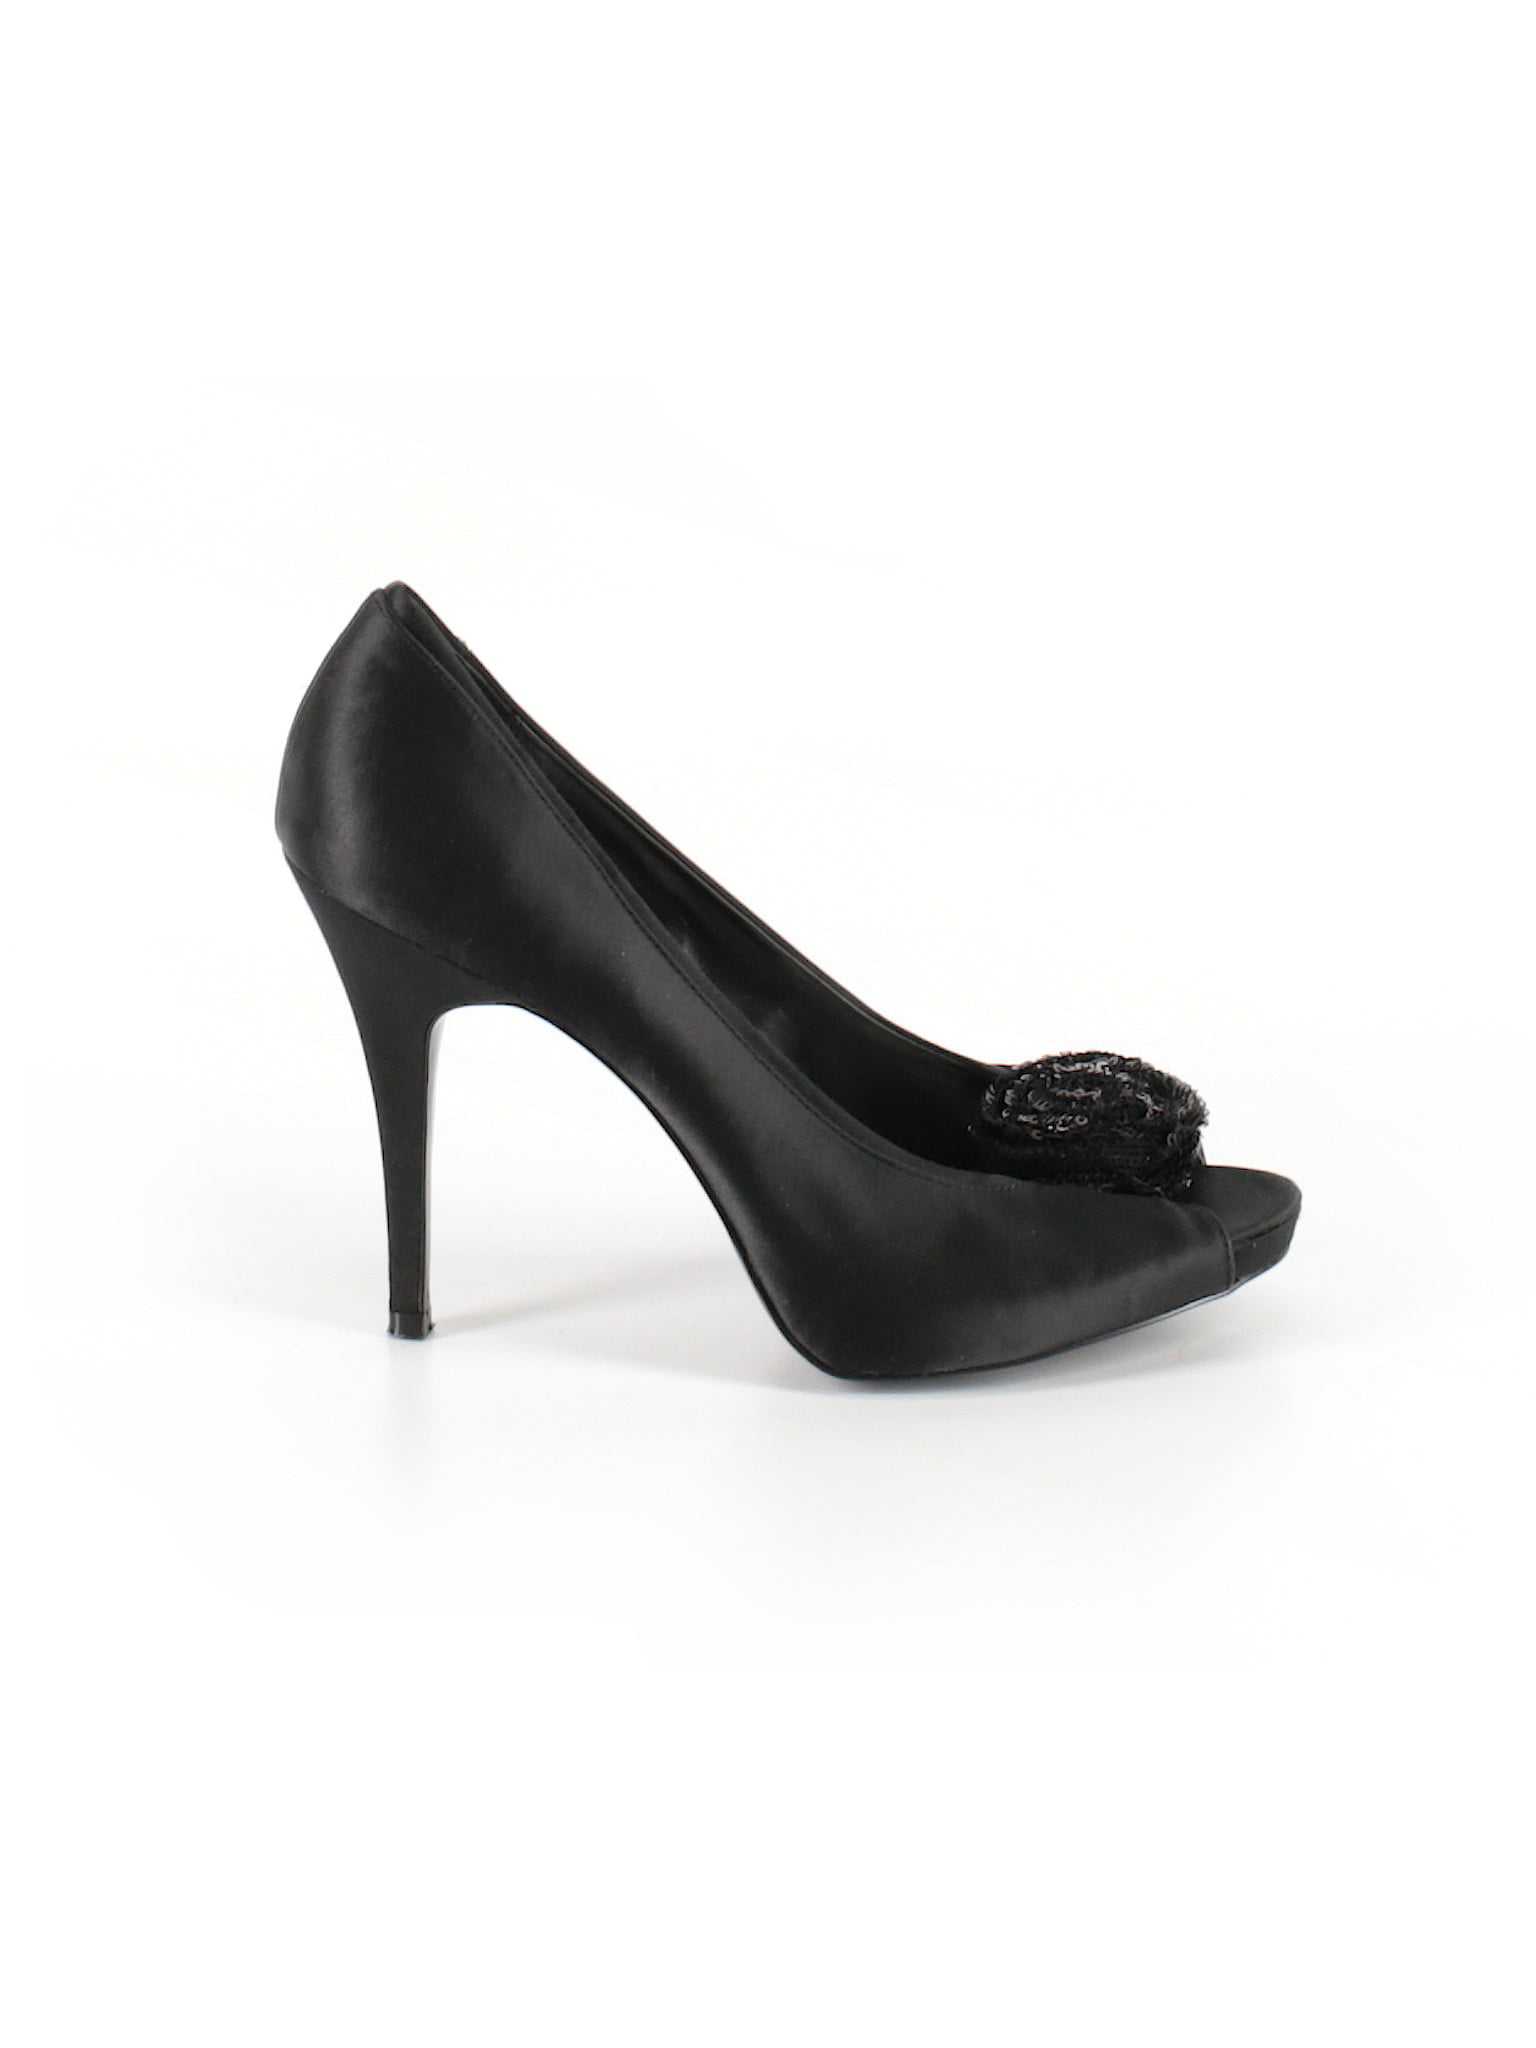 cheap size 9 heels